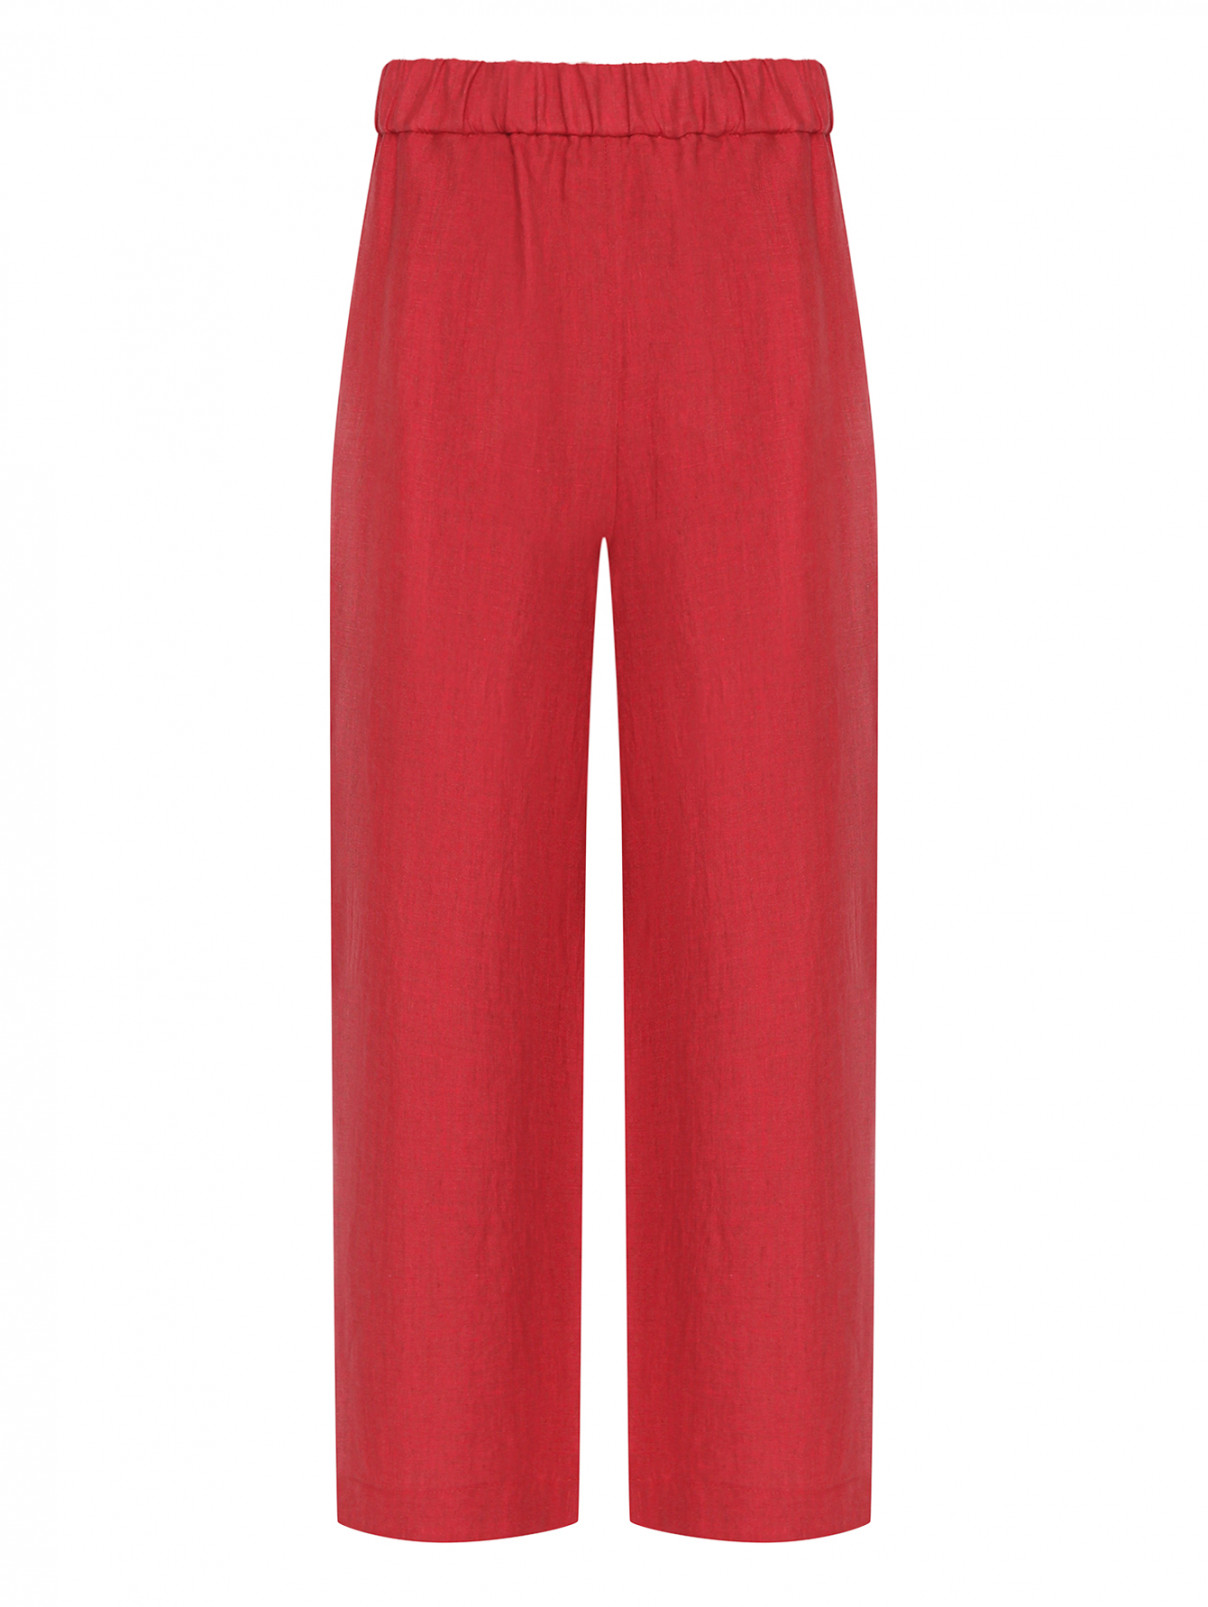 Однотонные льняные брюки Luisa Spagnoli  –  Общий вид  – Цвет:  Красный